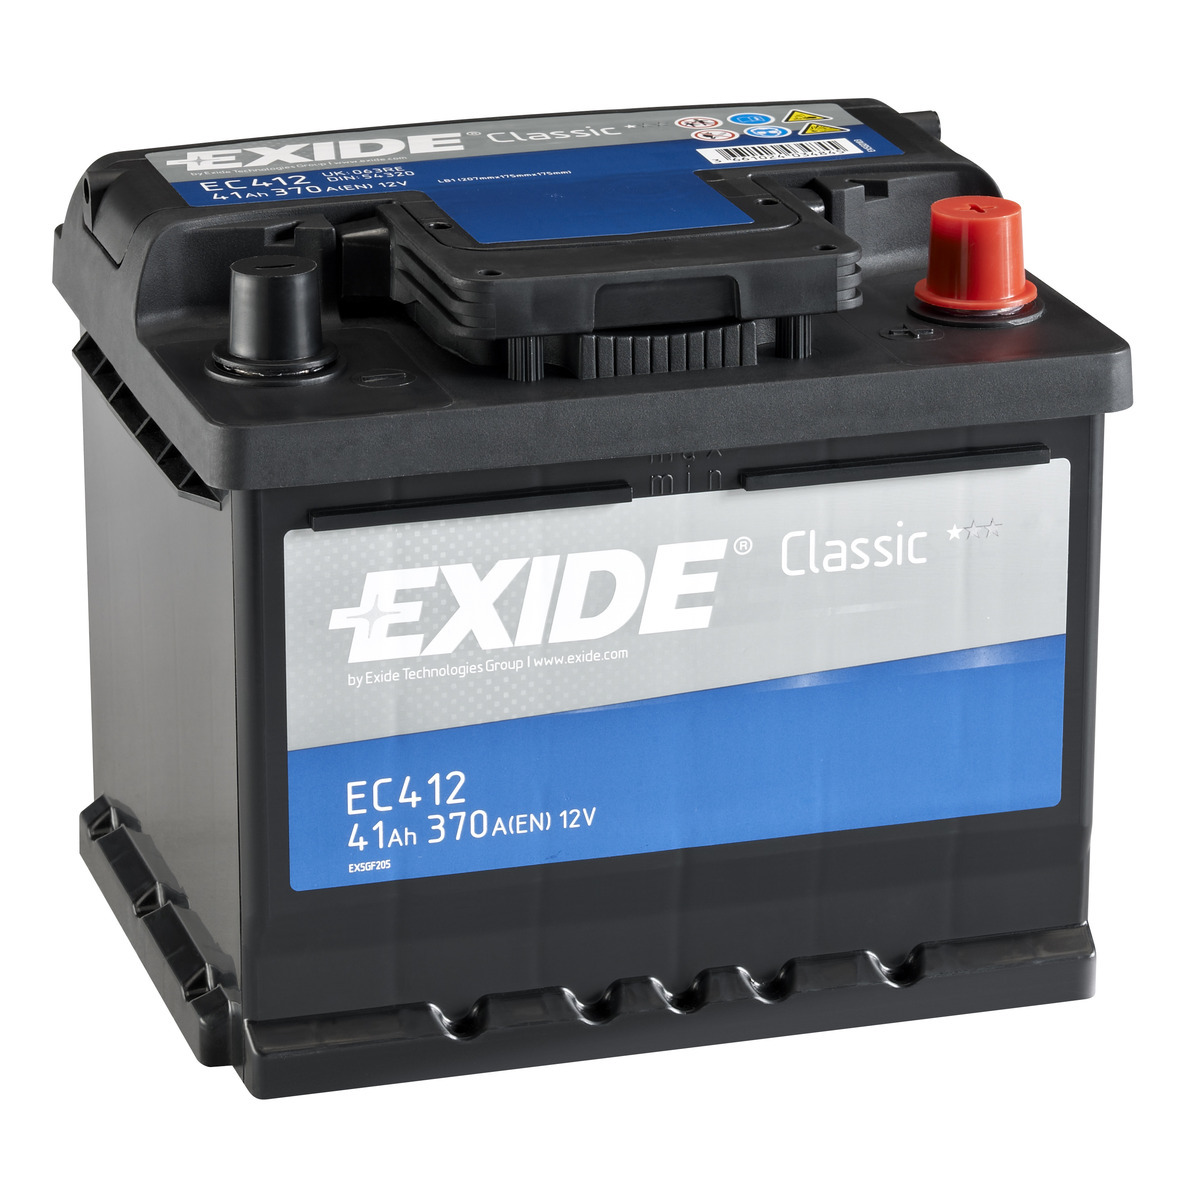 Купить запчасть EXIDE - EC412 41/Ч Classic EC412